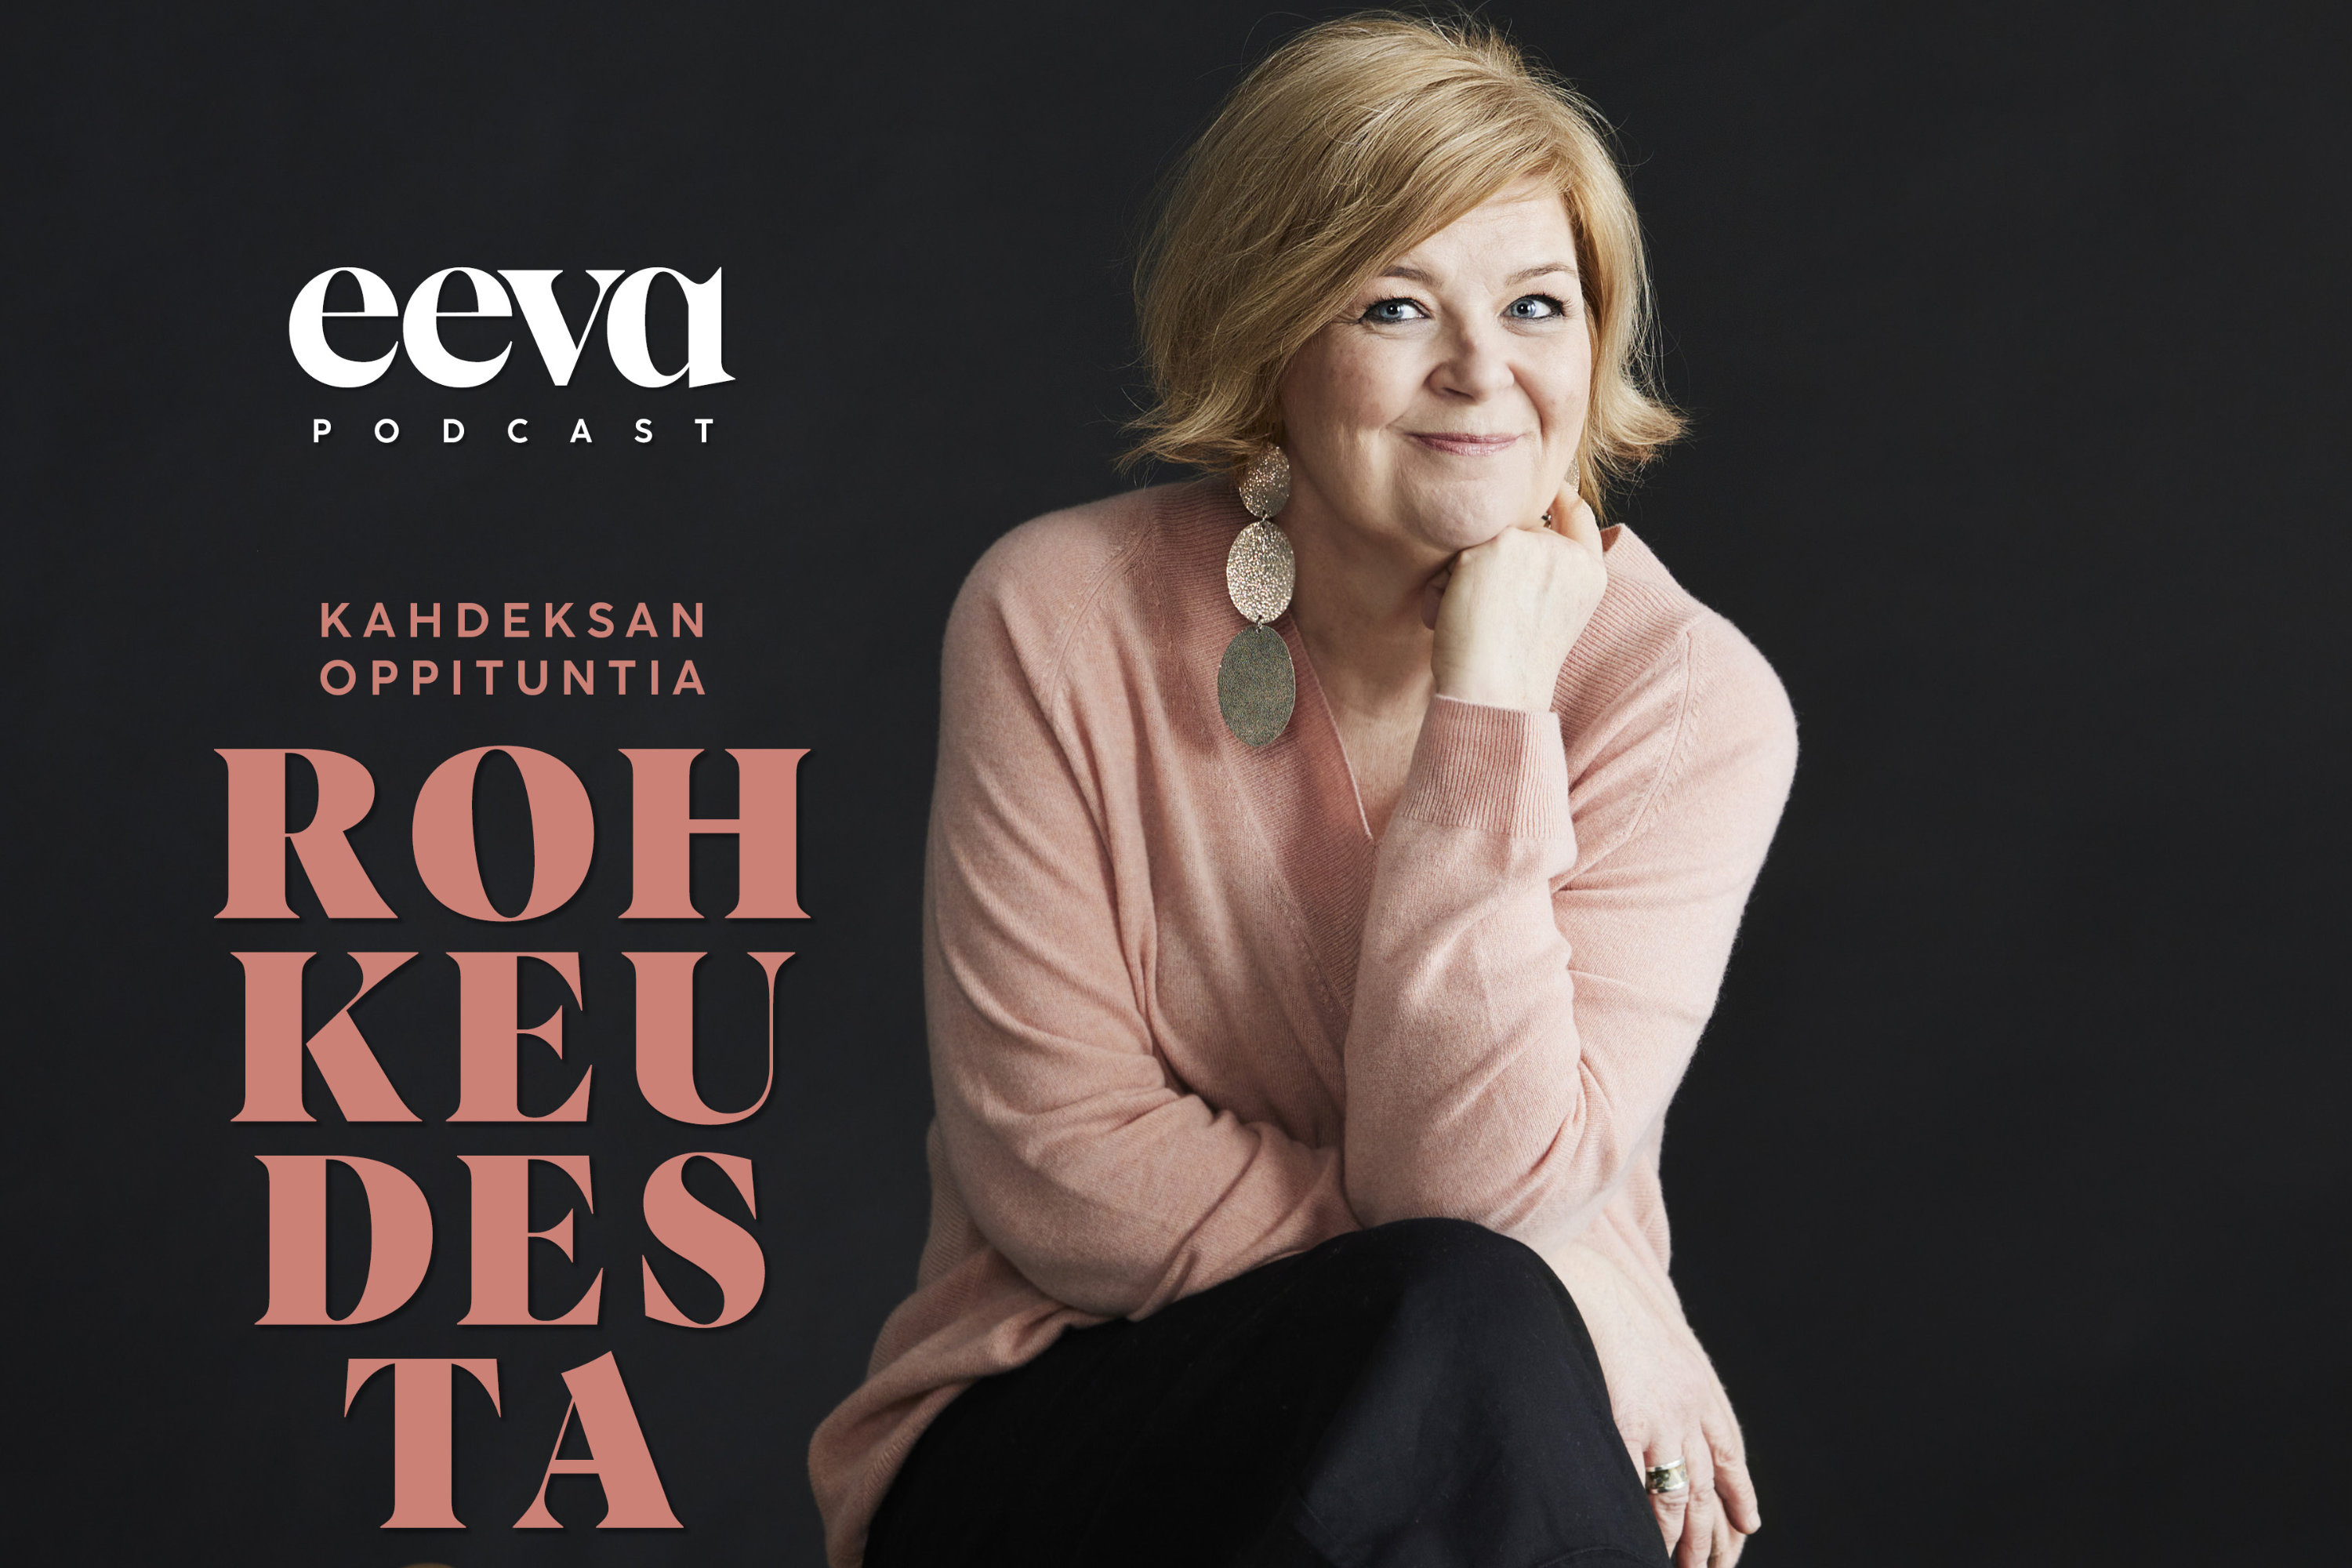 Kahdeksan oppituntia rohkeudesta Eeva-podcastia toimittaa ja juontaa Eevan päätoimittaja Mari Paalosalo-Jussinmäki.